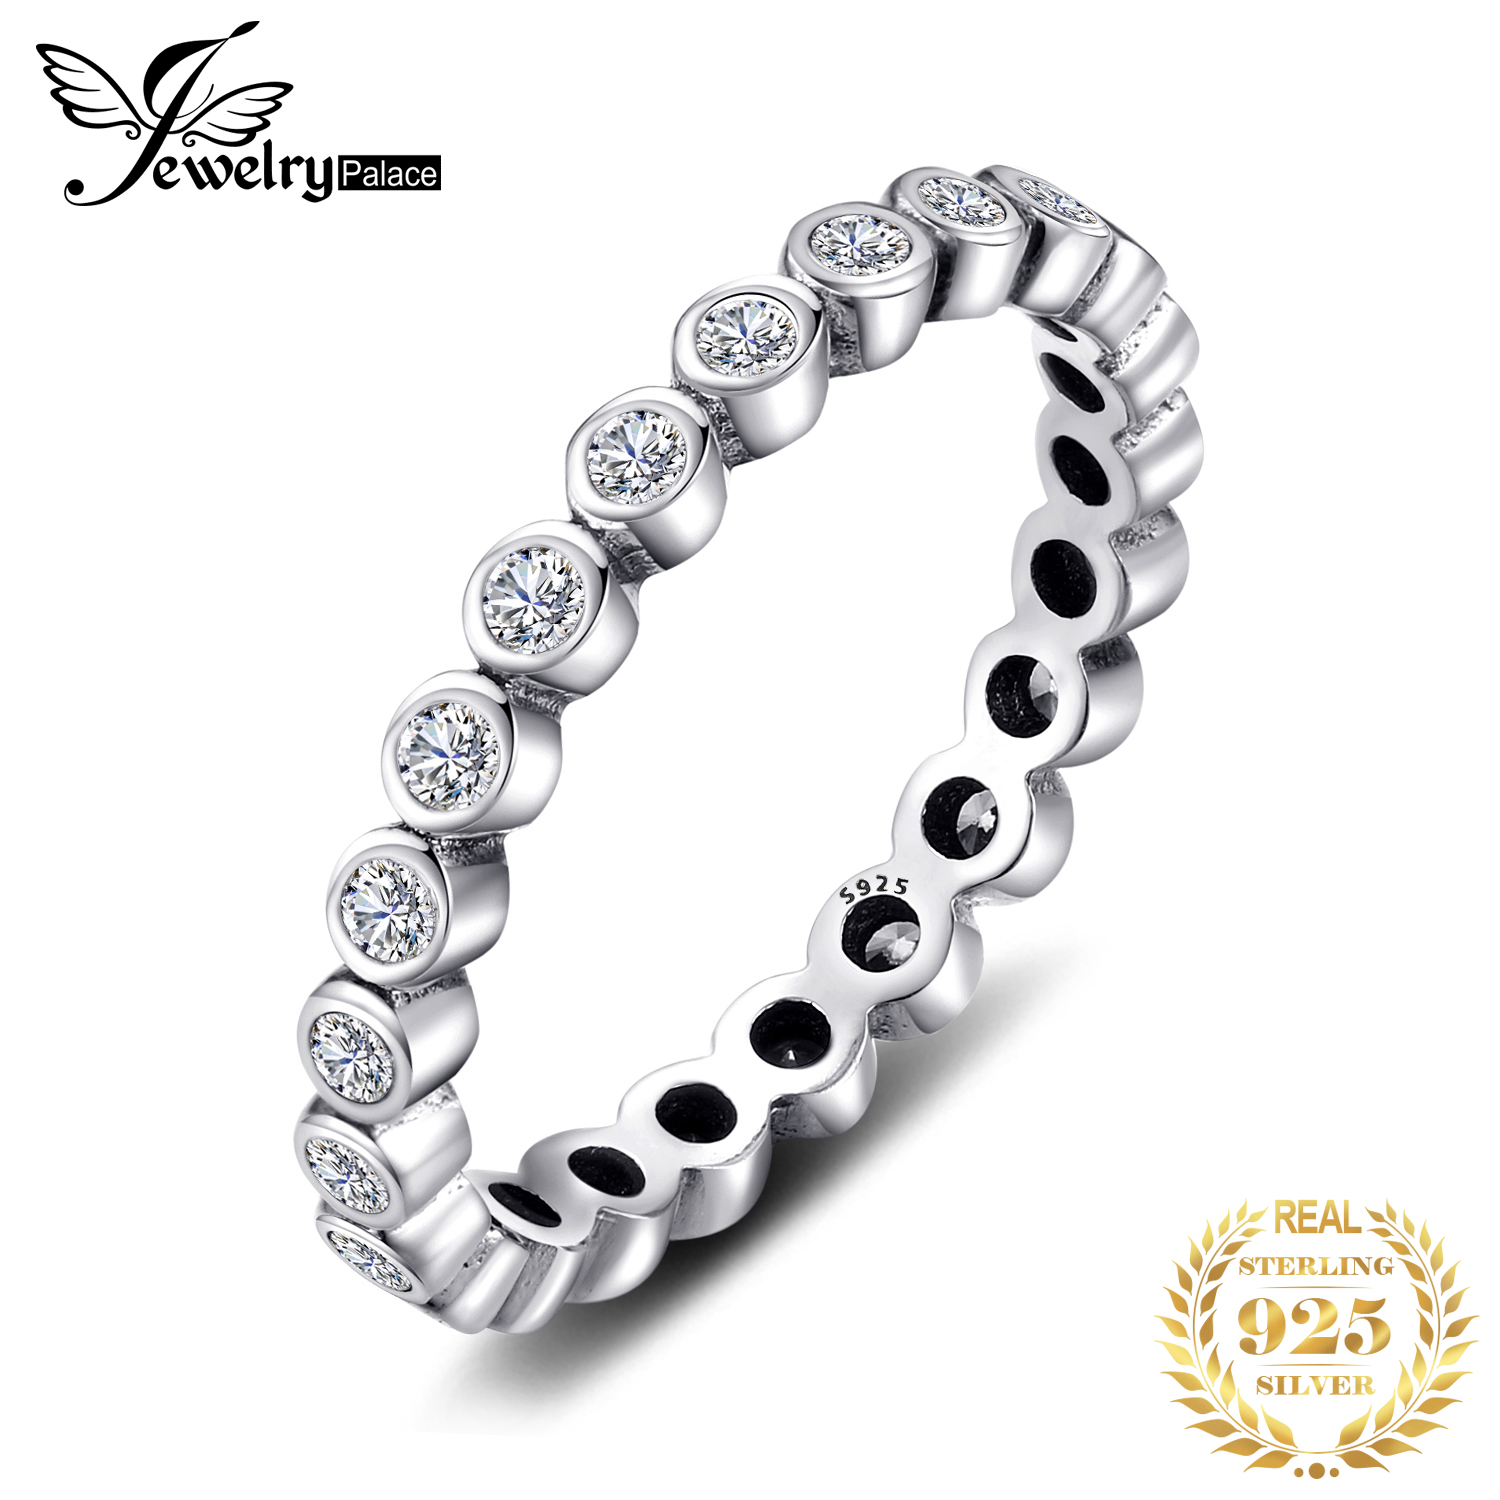 Jpalace Zirconia Ring 925 Sterling Zilveren Ringen Voor Vrouwen Stapelbaar Ring Eternity Band Zilver 925 Sieraden Fijne Sieraden